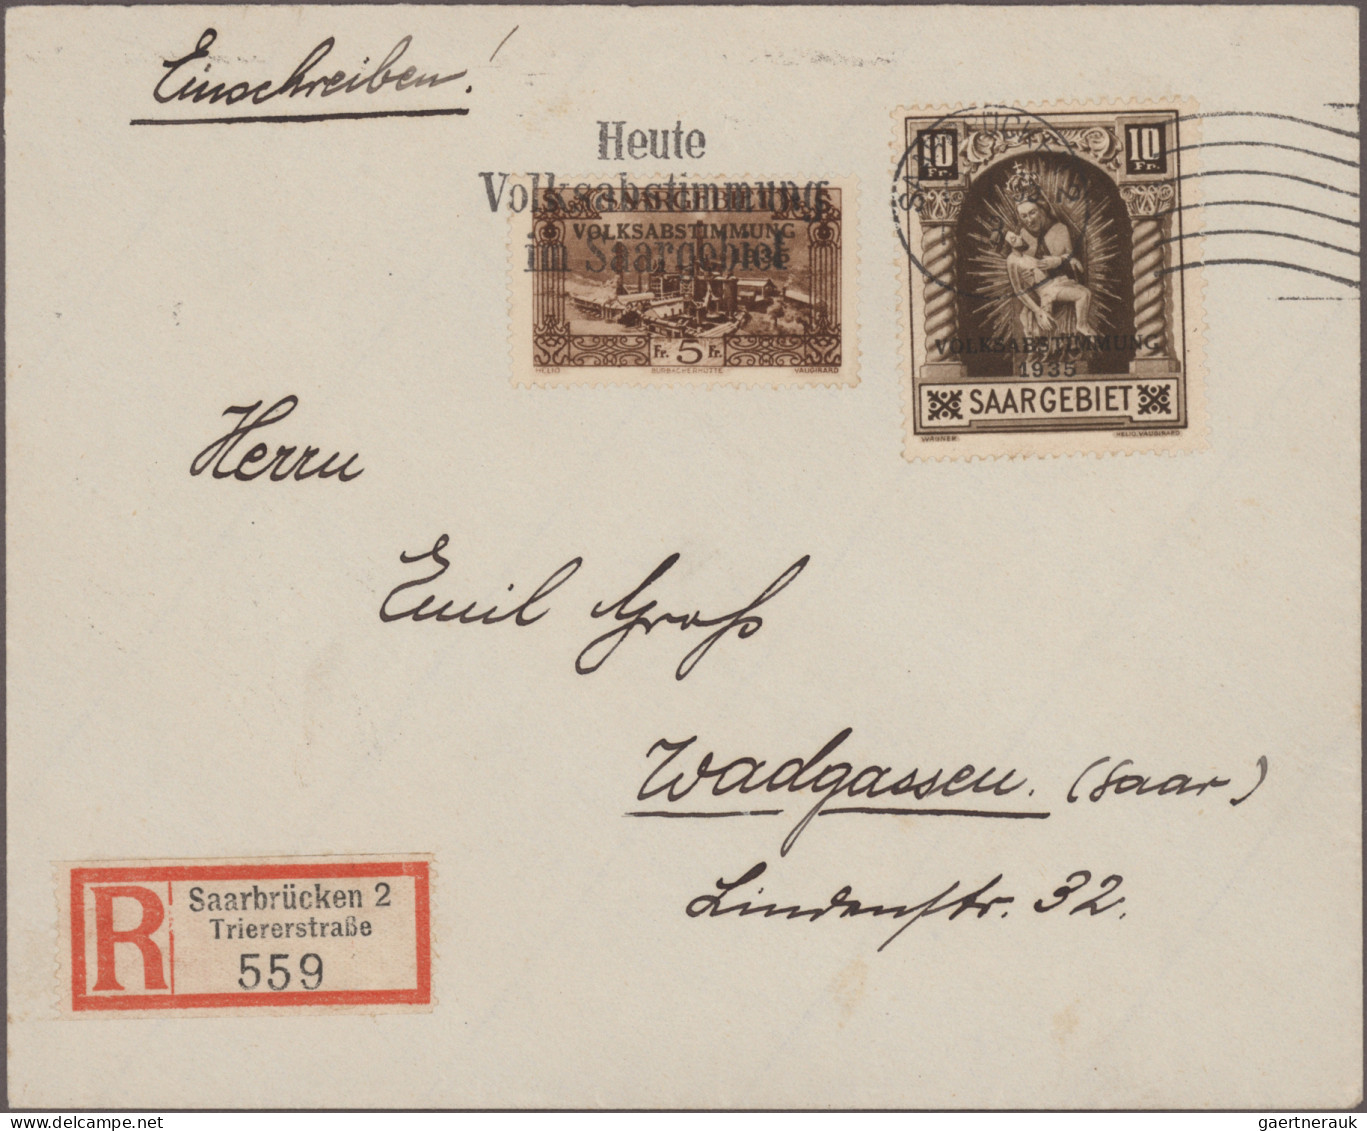 Deutsche Abstimmungsgebiete: Saargebiet: 1934/1935 "VOLKSABSTIMMUNG": 85 Belege